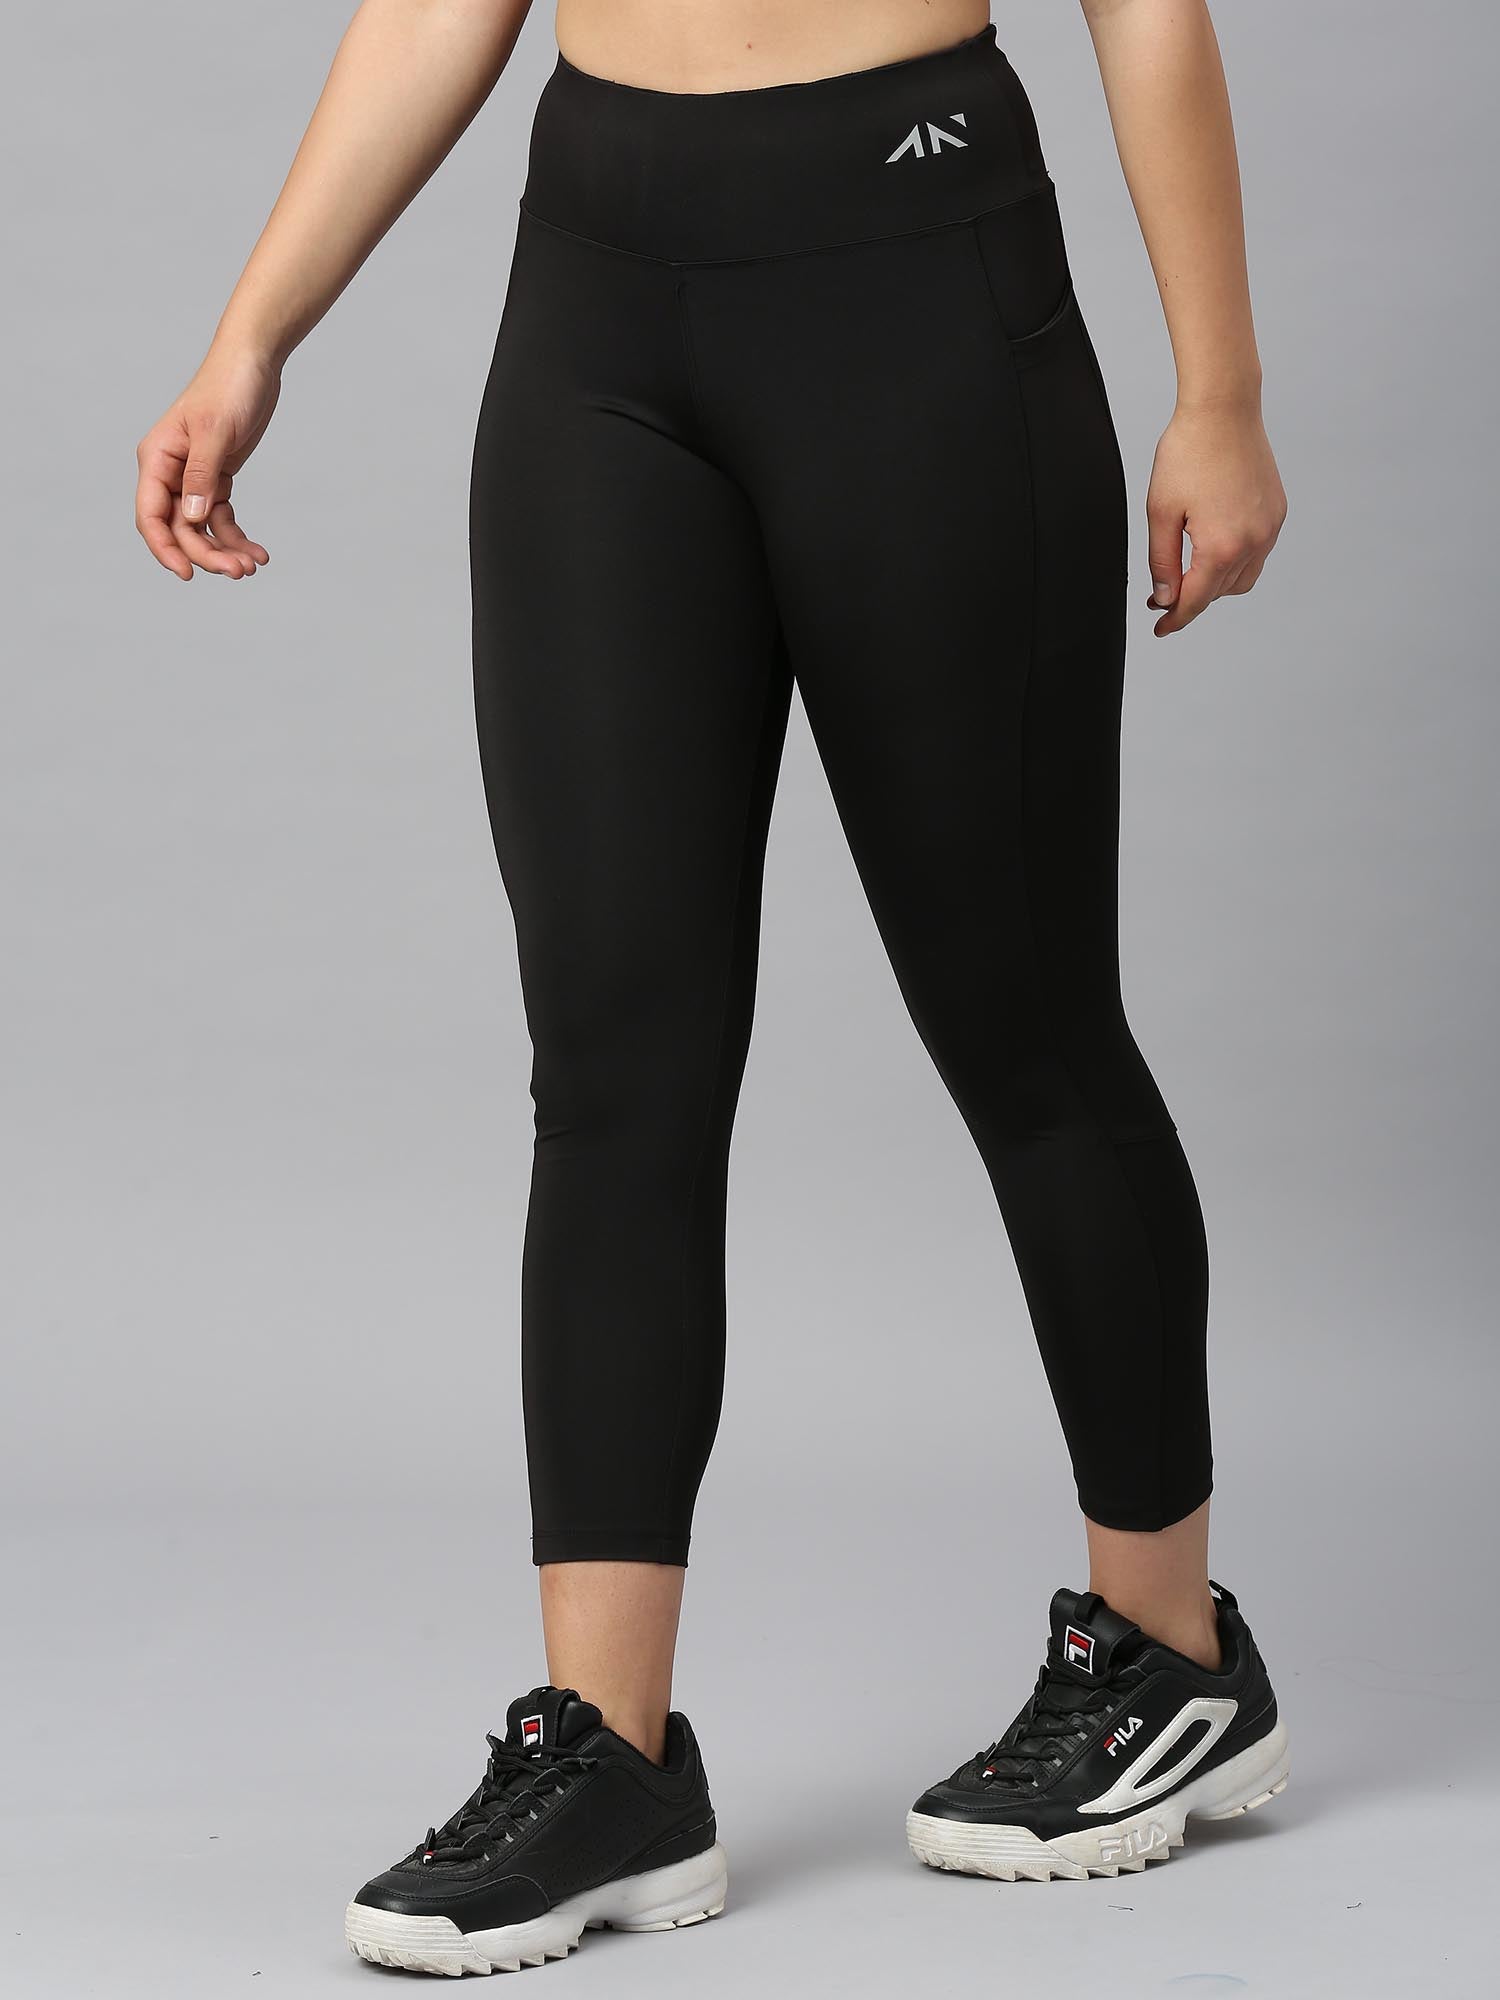 Nike Power Classic Gym Long Pants Black | Traininn